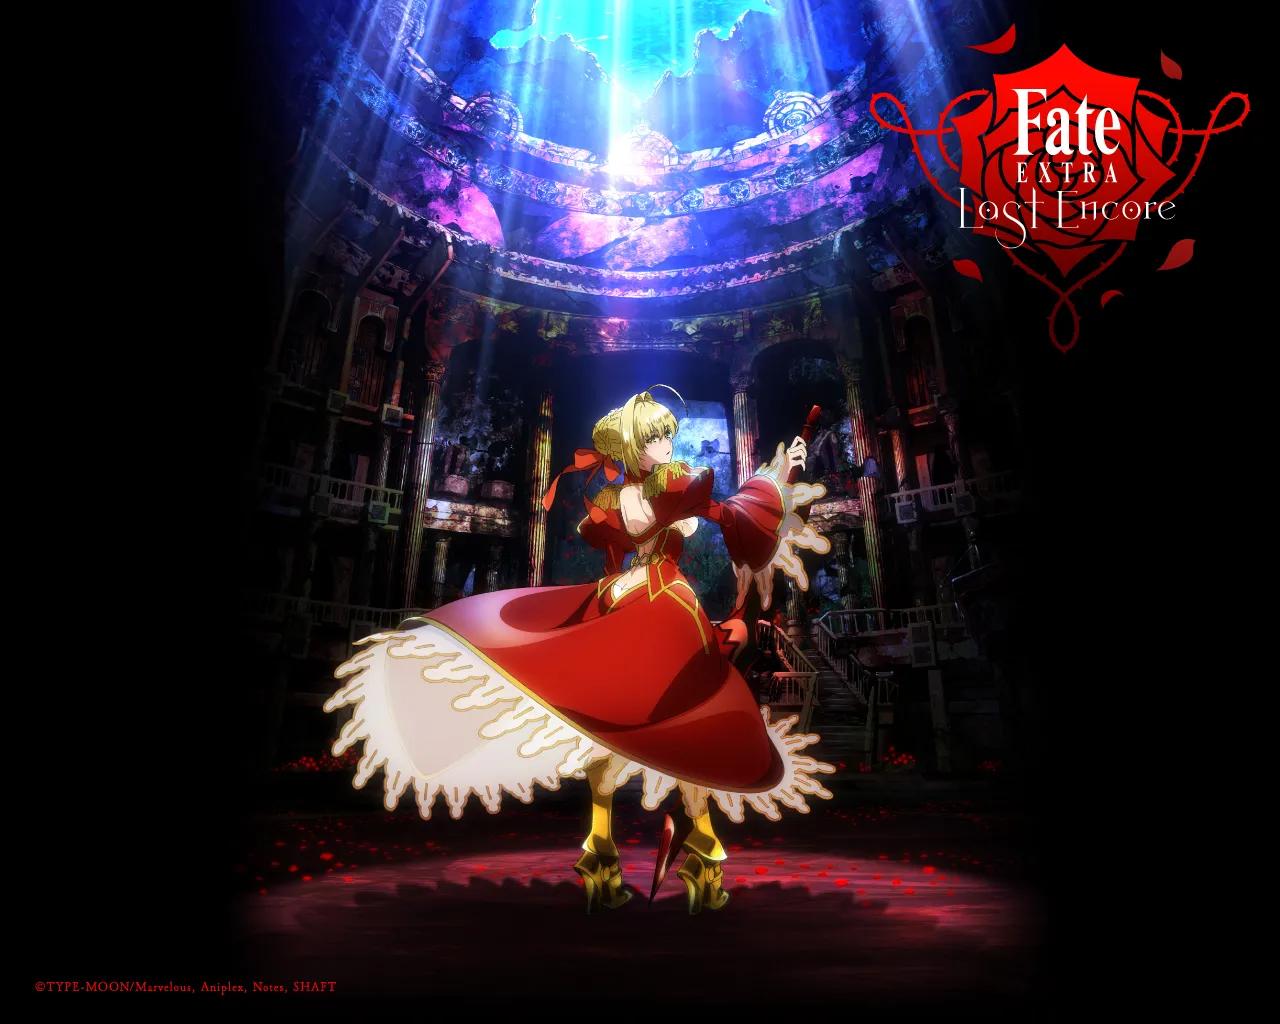 Fate/Extra Last Encore se estrenará en 2017